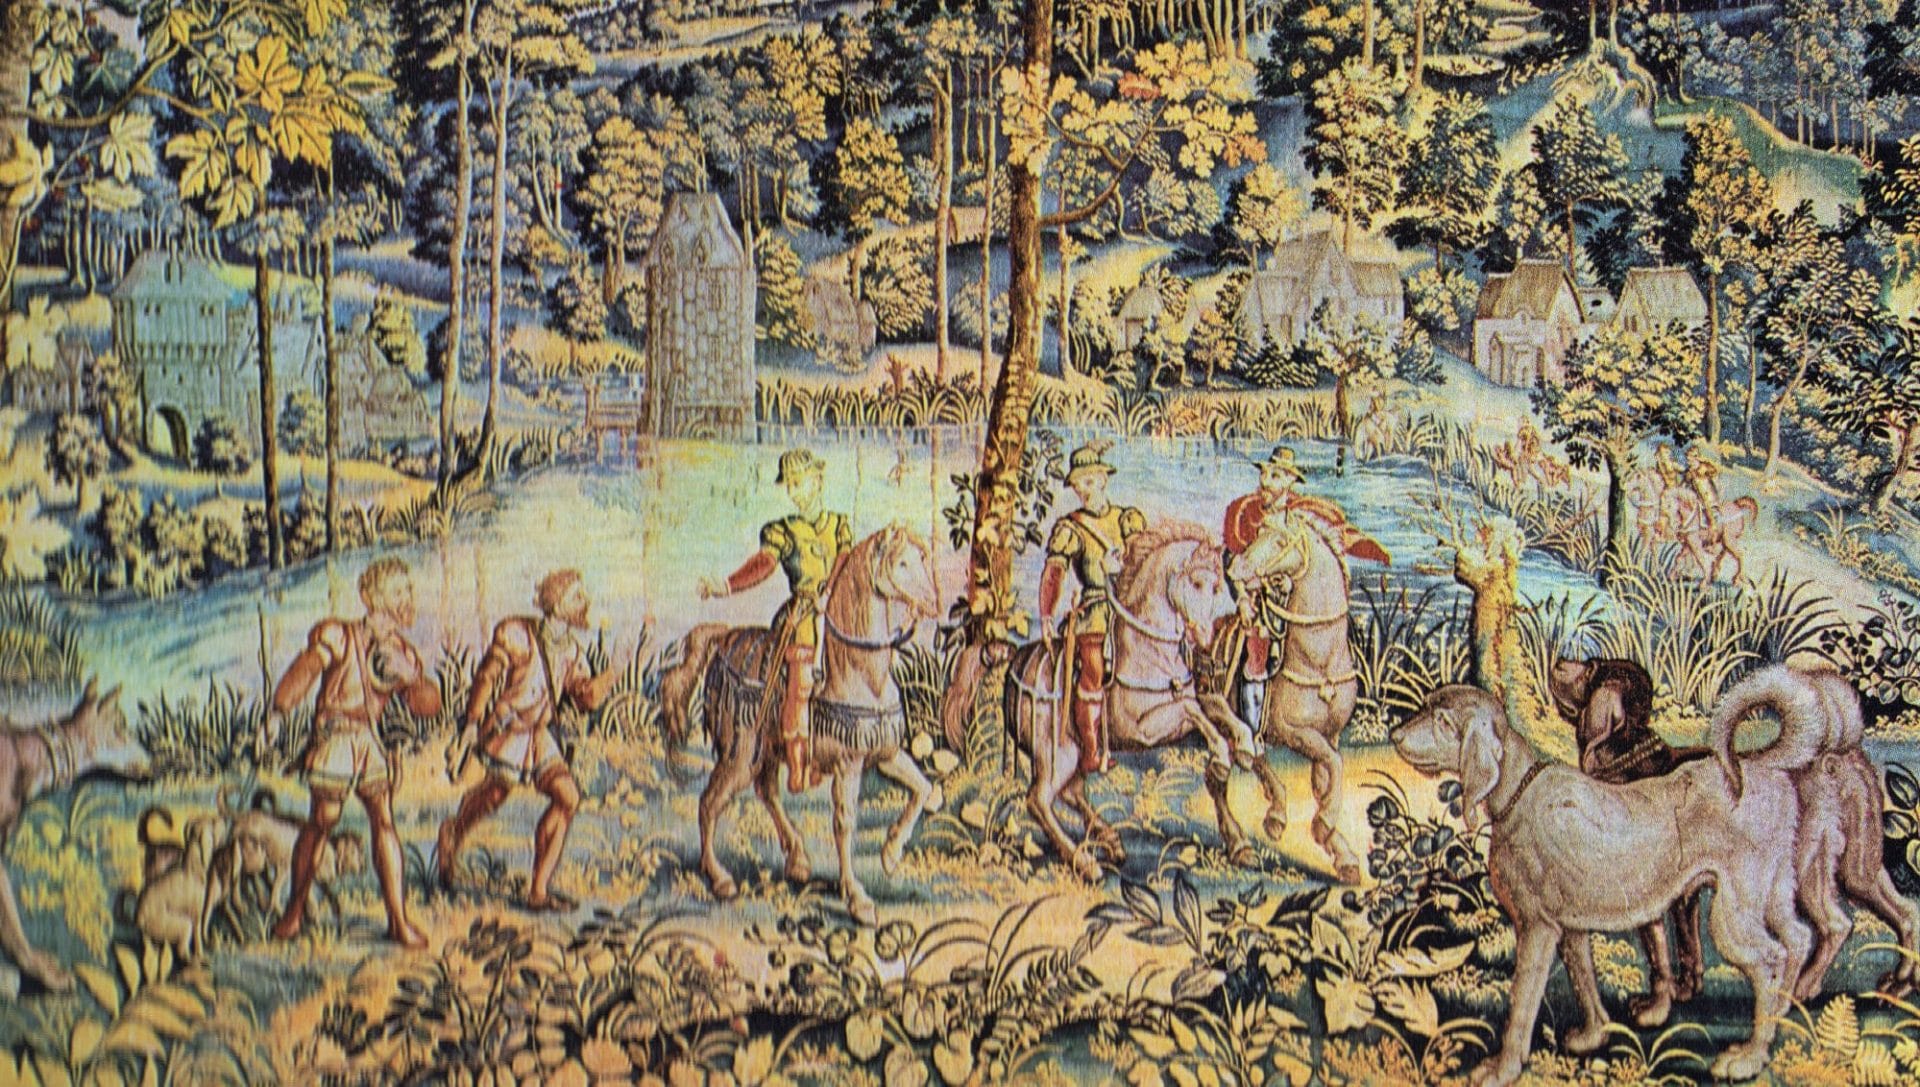 Le rendez-vous de chasse (vers 1555). Tapisserie représentant un groupe de cavaliers rassemblés pour la chasse à courre devant un étang avec, sur la gauche, des constructions qui pourraient appartenir au château de Boitsfort. Le carton dont elle s'inspire rappelle les paysage du peintre flamand Van Cooninxloo.